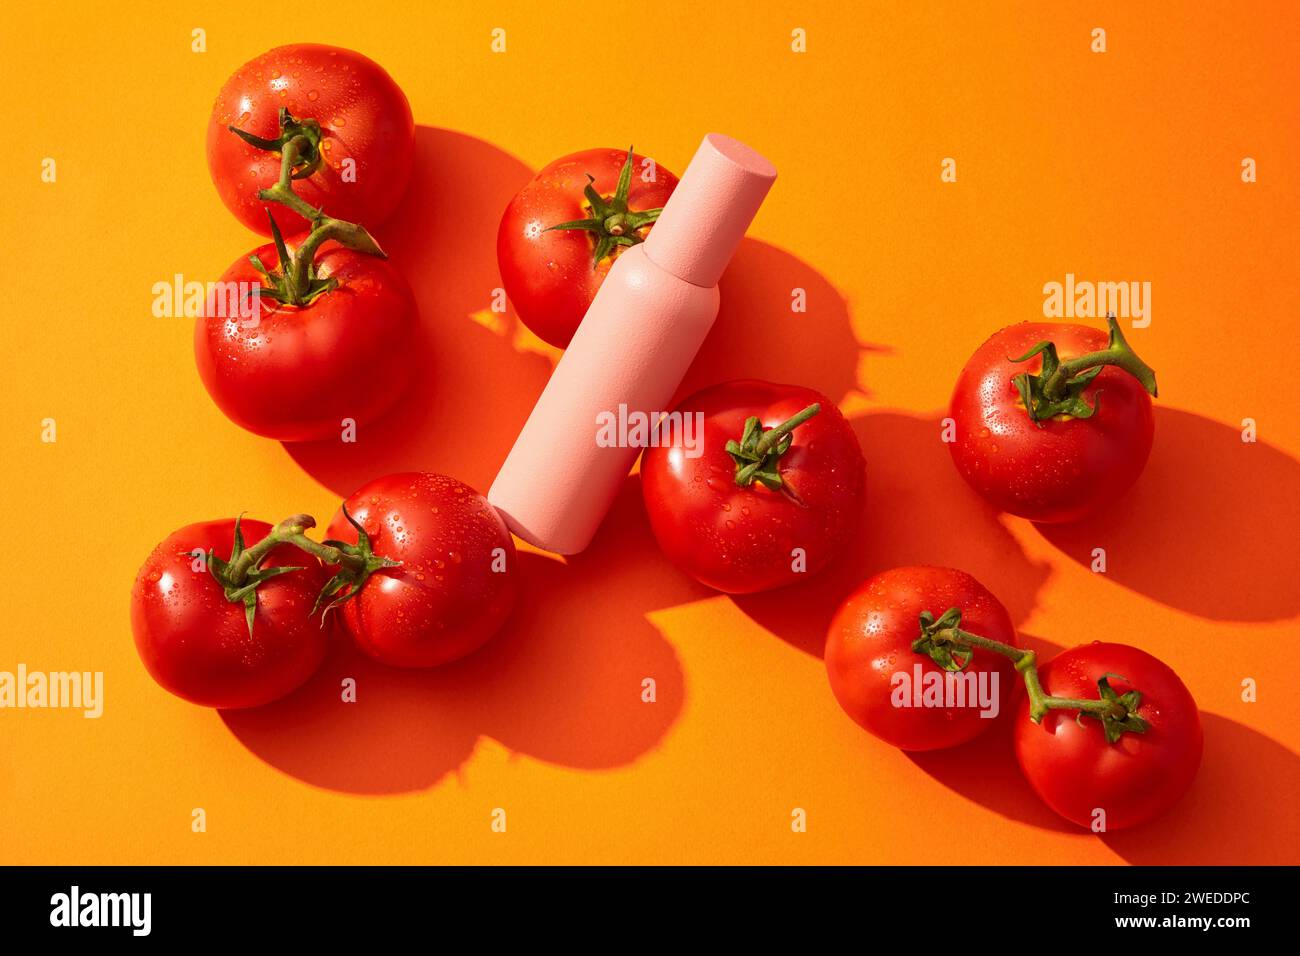 Il biberon rosa per la cura della pelle senza etichetta è decorato con molti pomodori. Il pomodoro (Solanum lycopersicum) contiene licopene che protegge dall'innocue Foto Stock